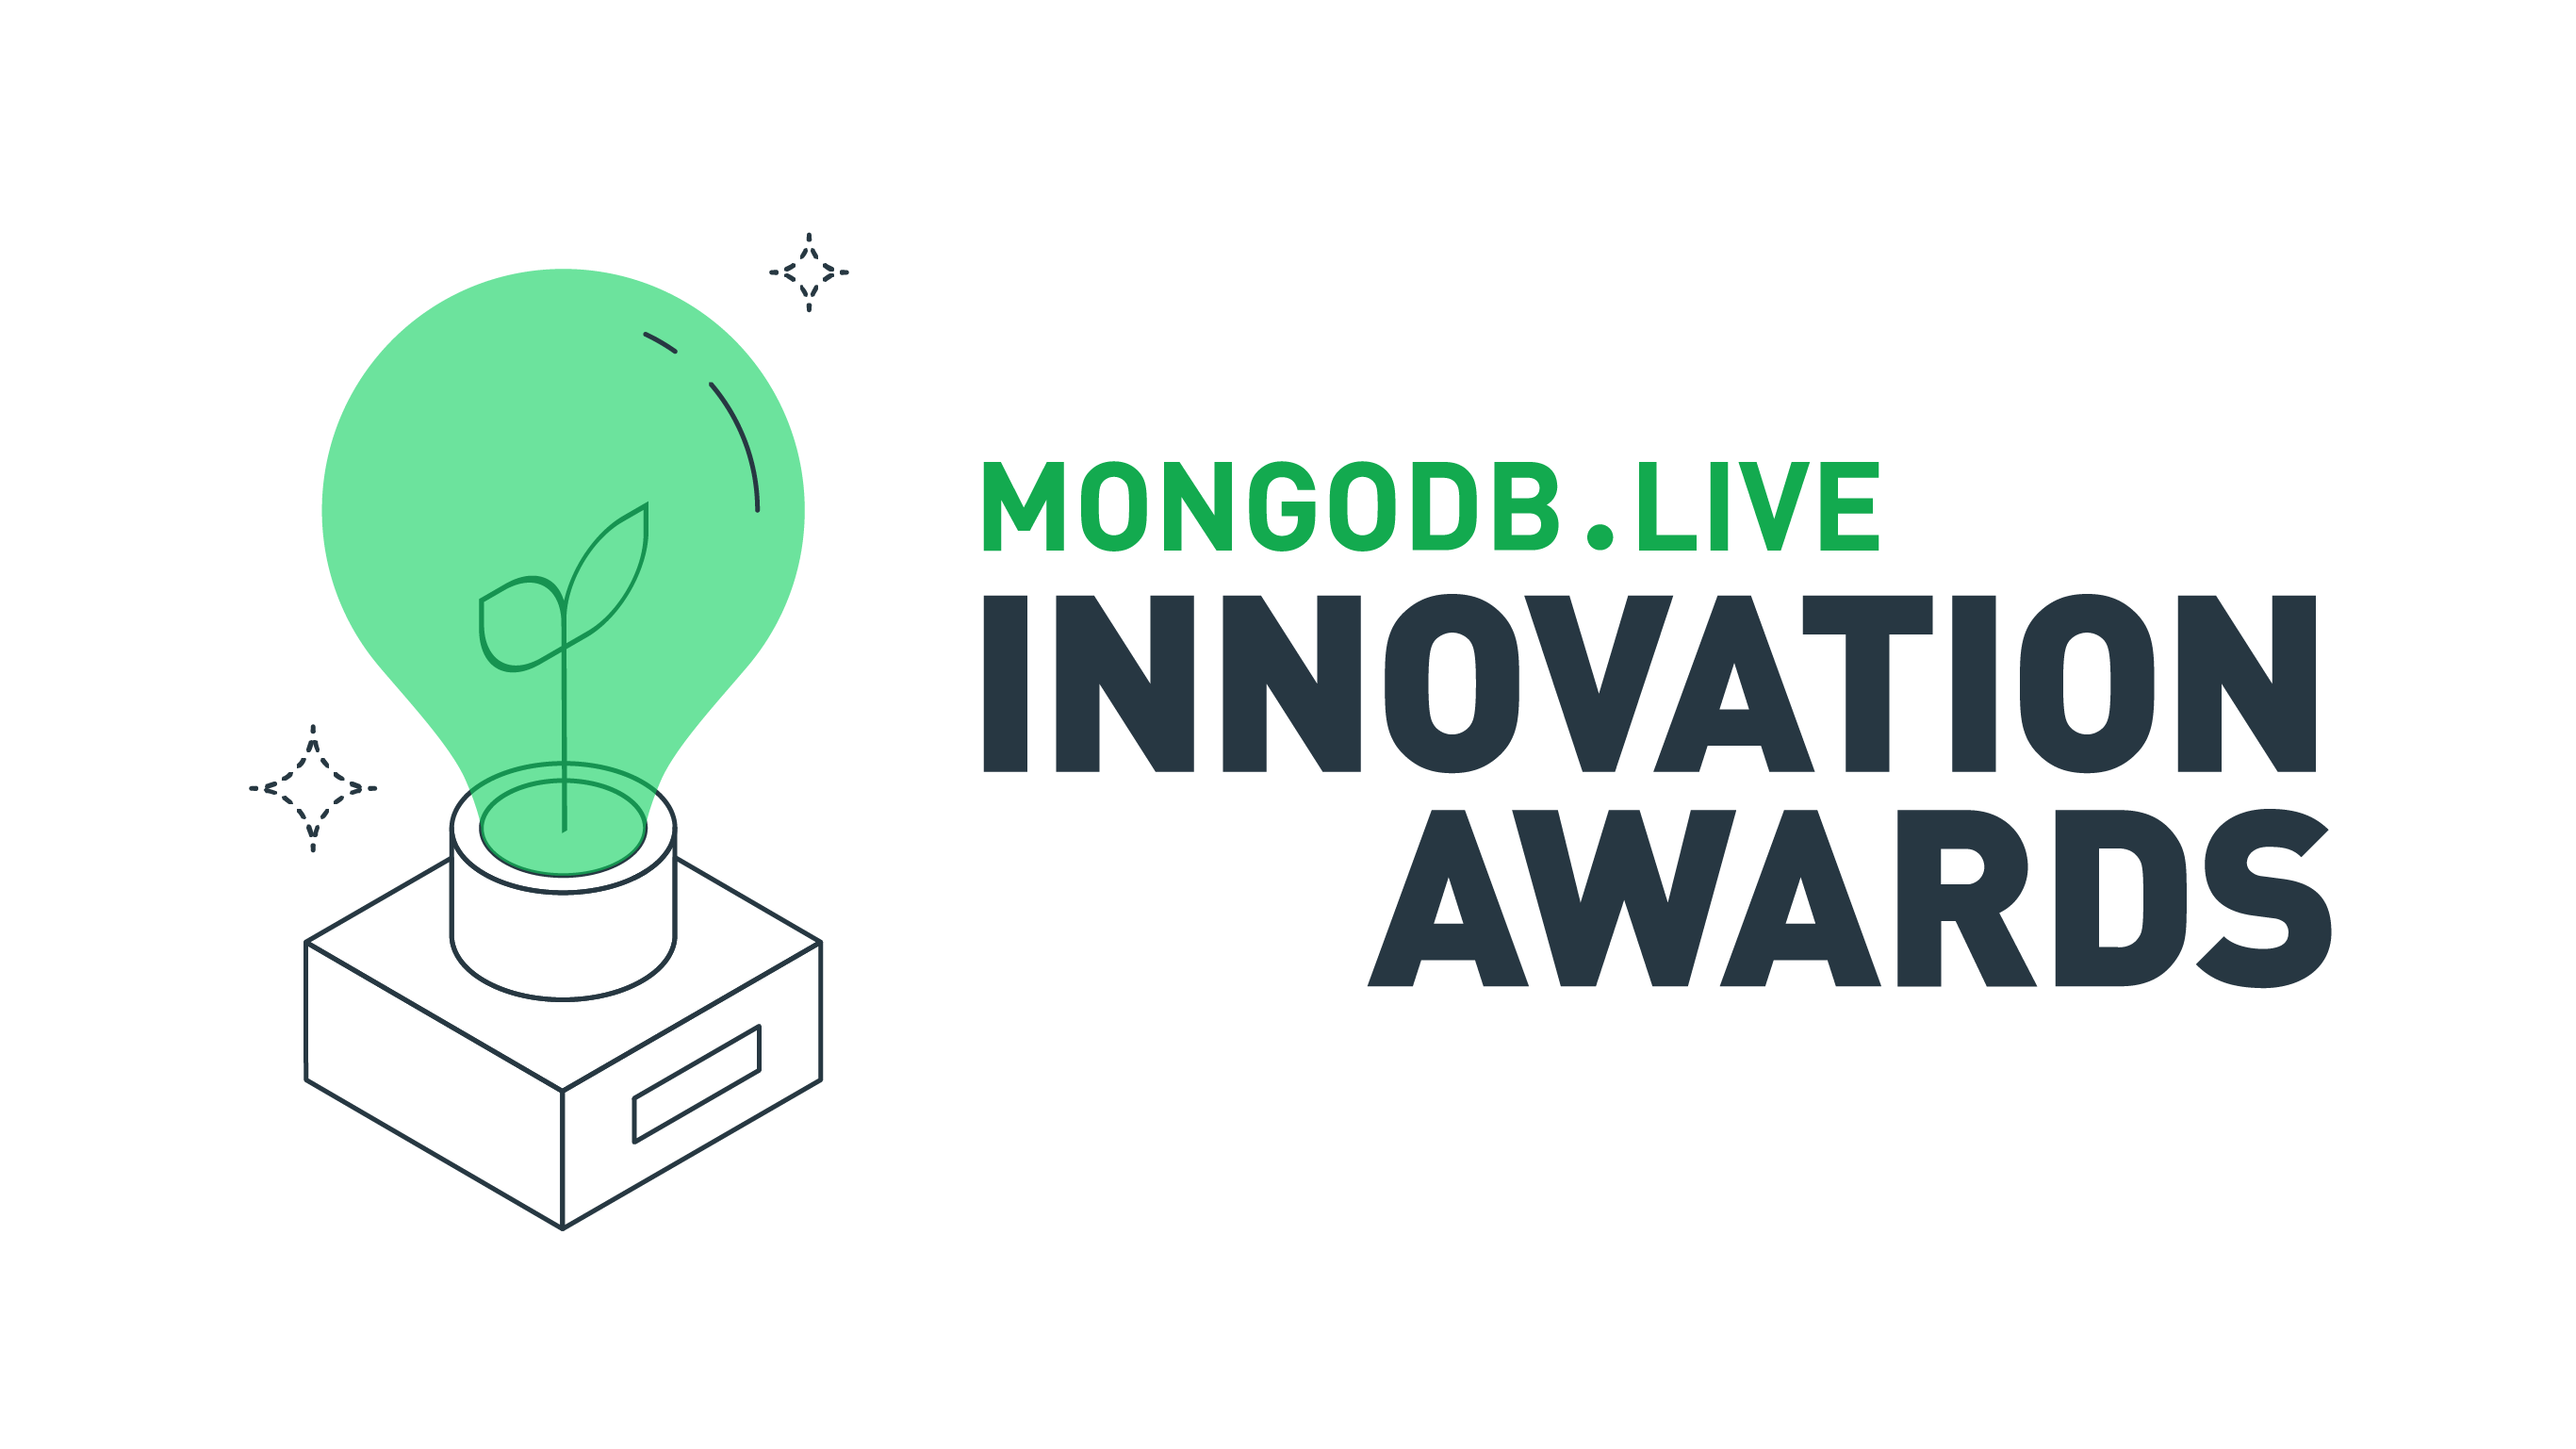 Innovation Awards logo — light bg